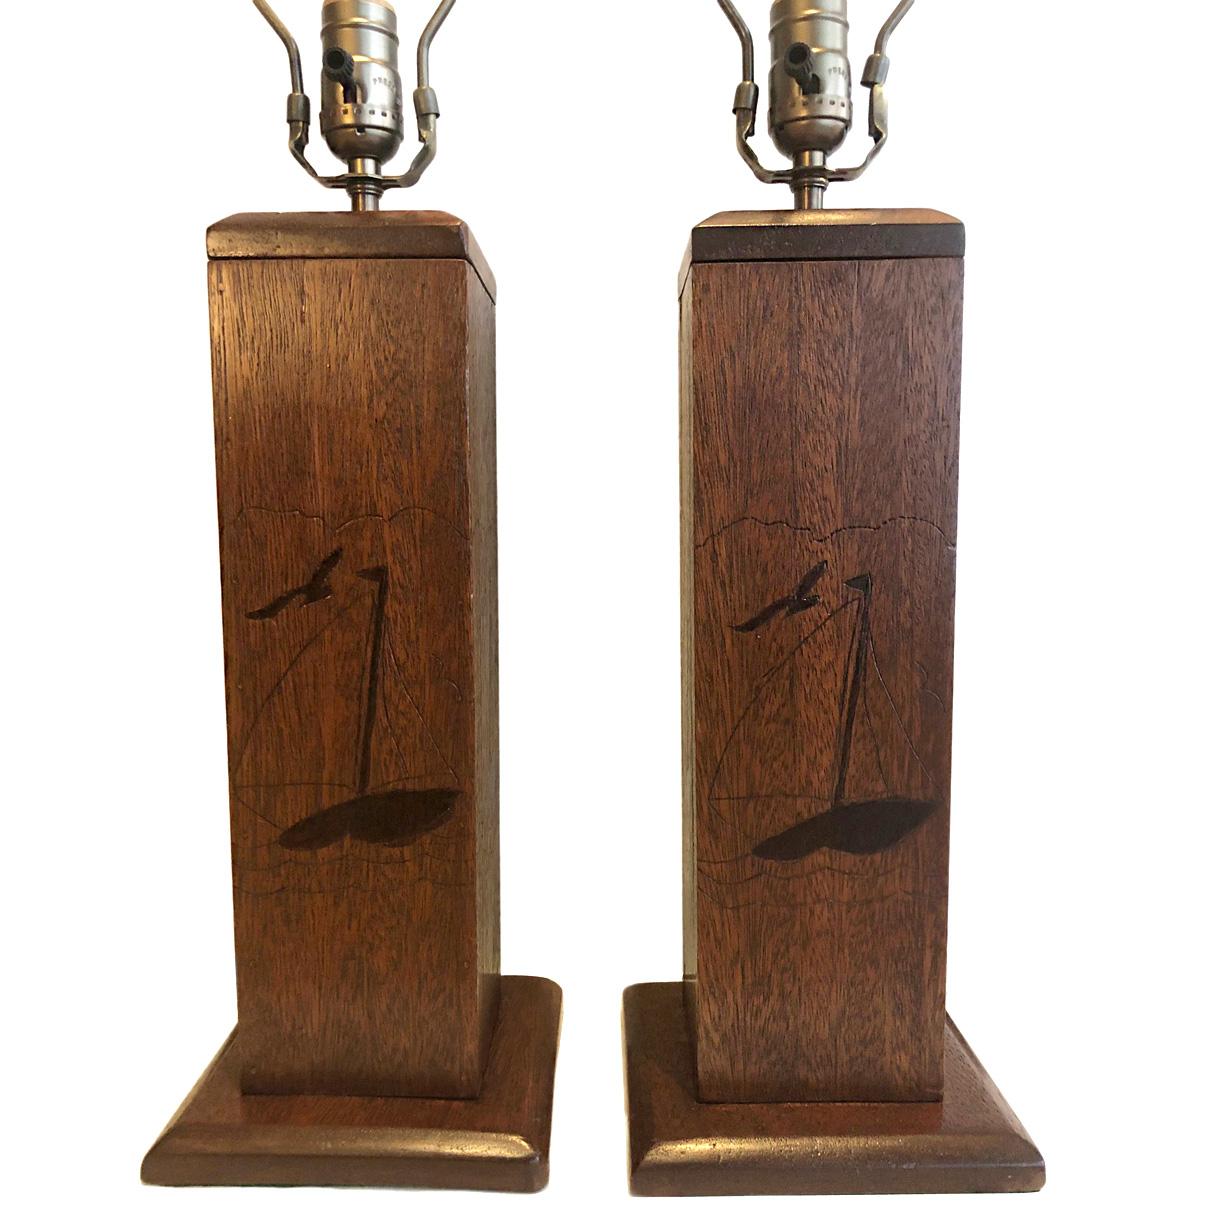 Une paire de lampes en marqueterie française des années 1920 avec des voiliers en marqueterie.

Mesures :
Hauteur du corps 16
Hauteur jusqu'au reste de l'abat-jour 26